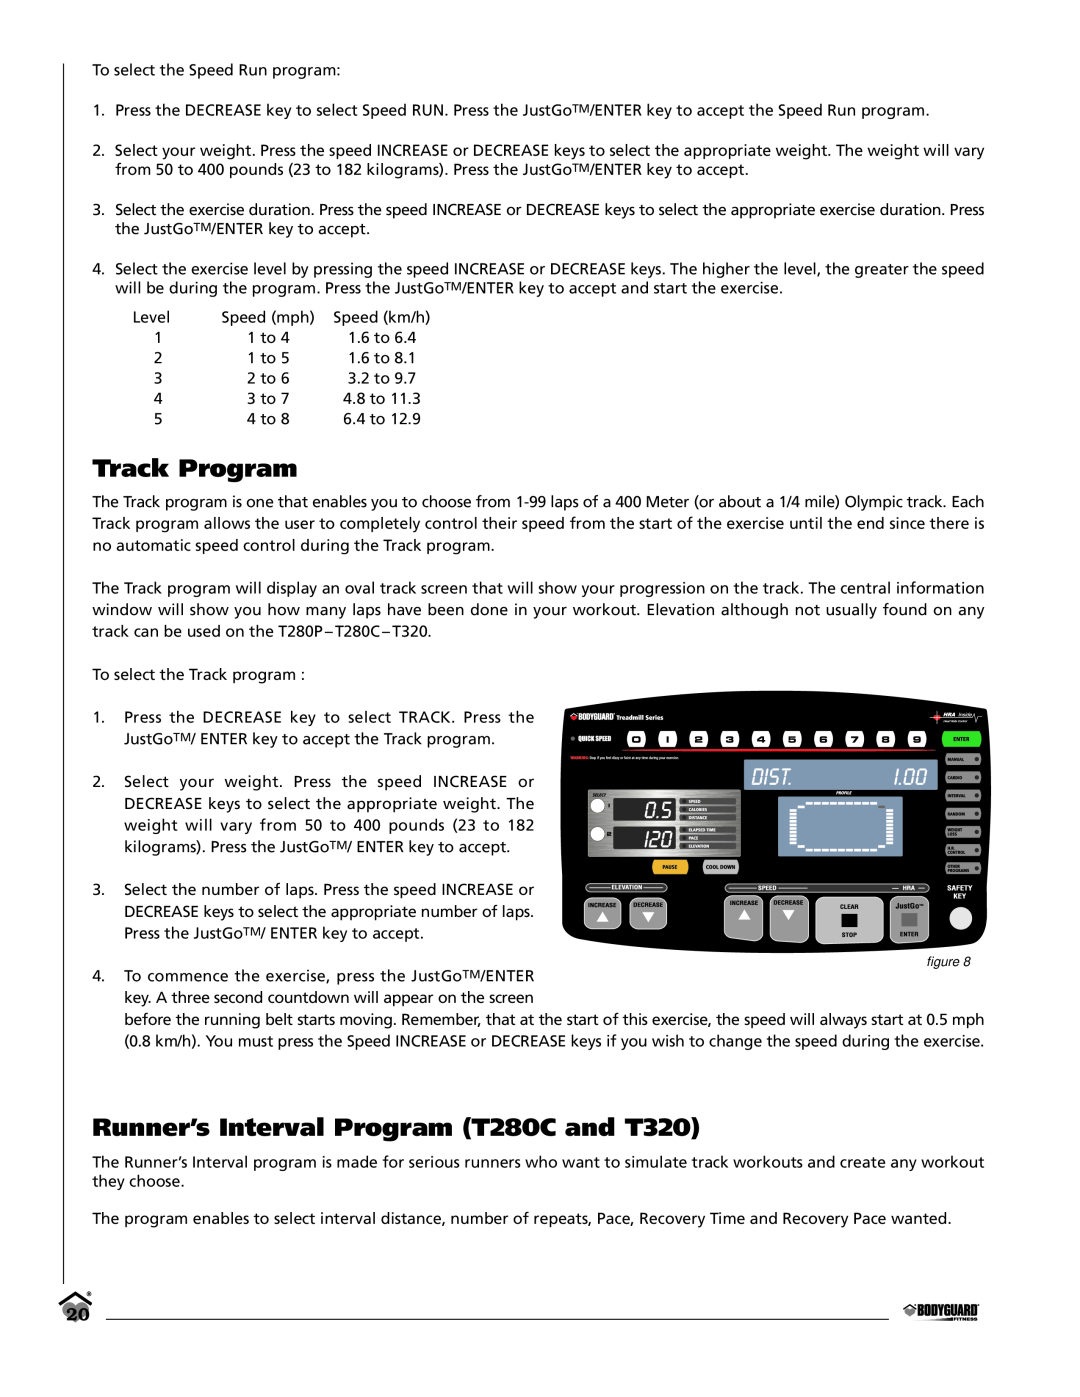 Bodyguard LT280P manual Track Program, Runner’s Interval Program T280C and T320, ﬁgure 